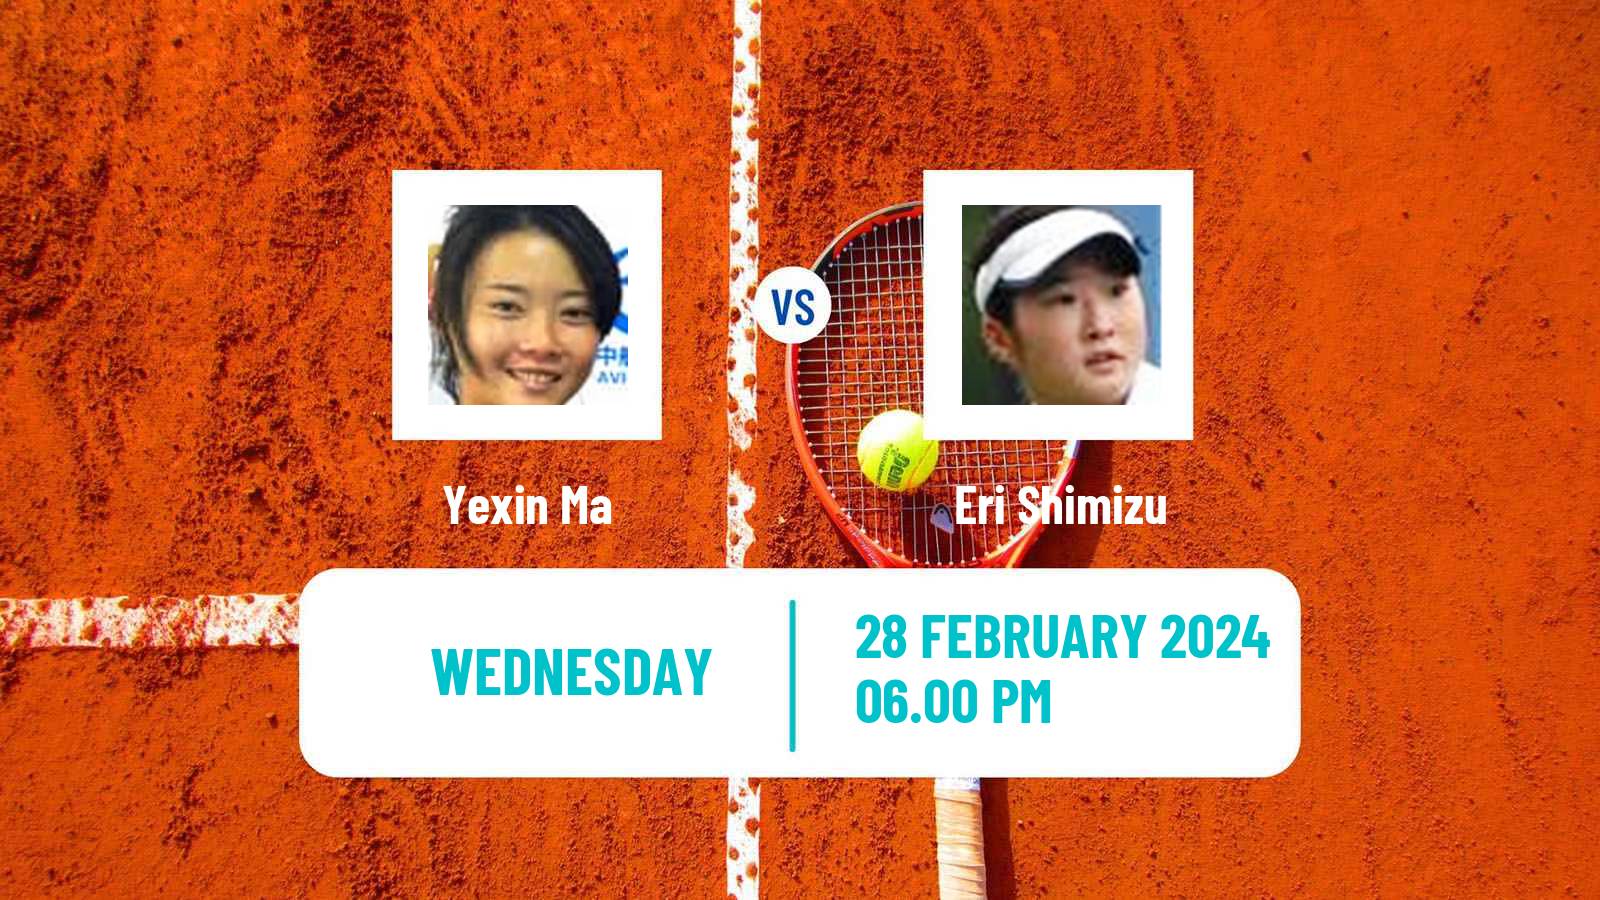 Tennis ITF W35 Traralgon 2 Women Yexin Ma - Eri Shimizu